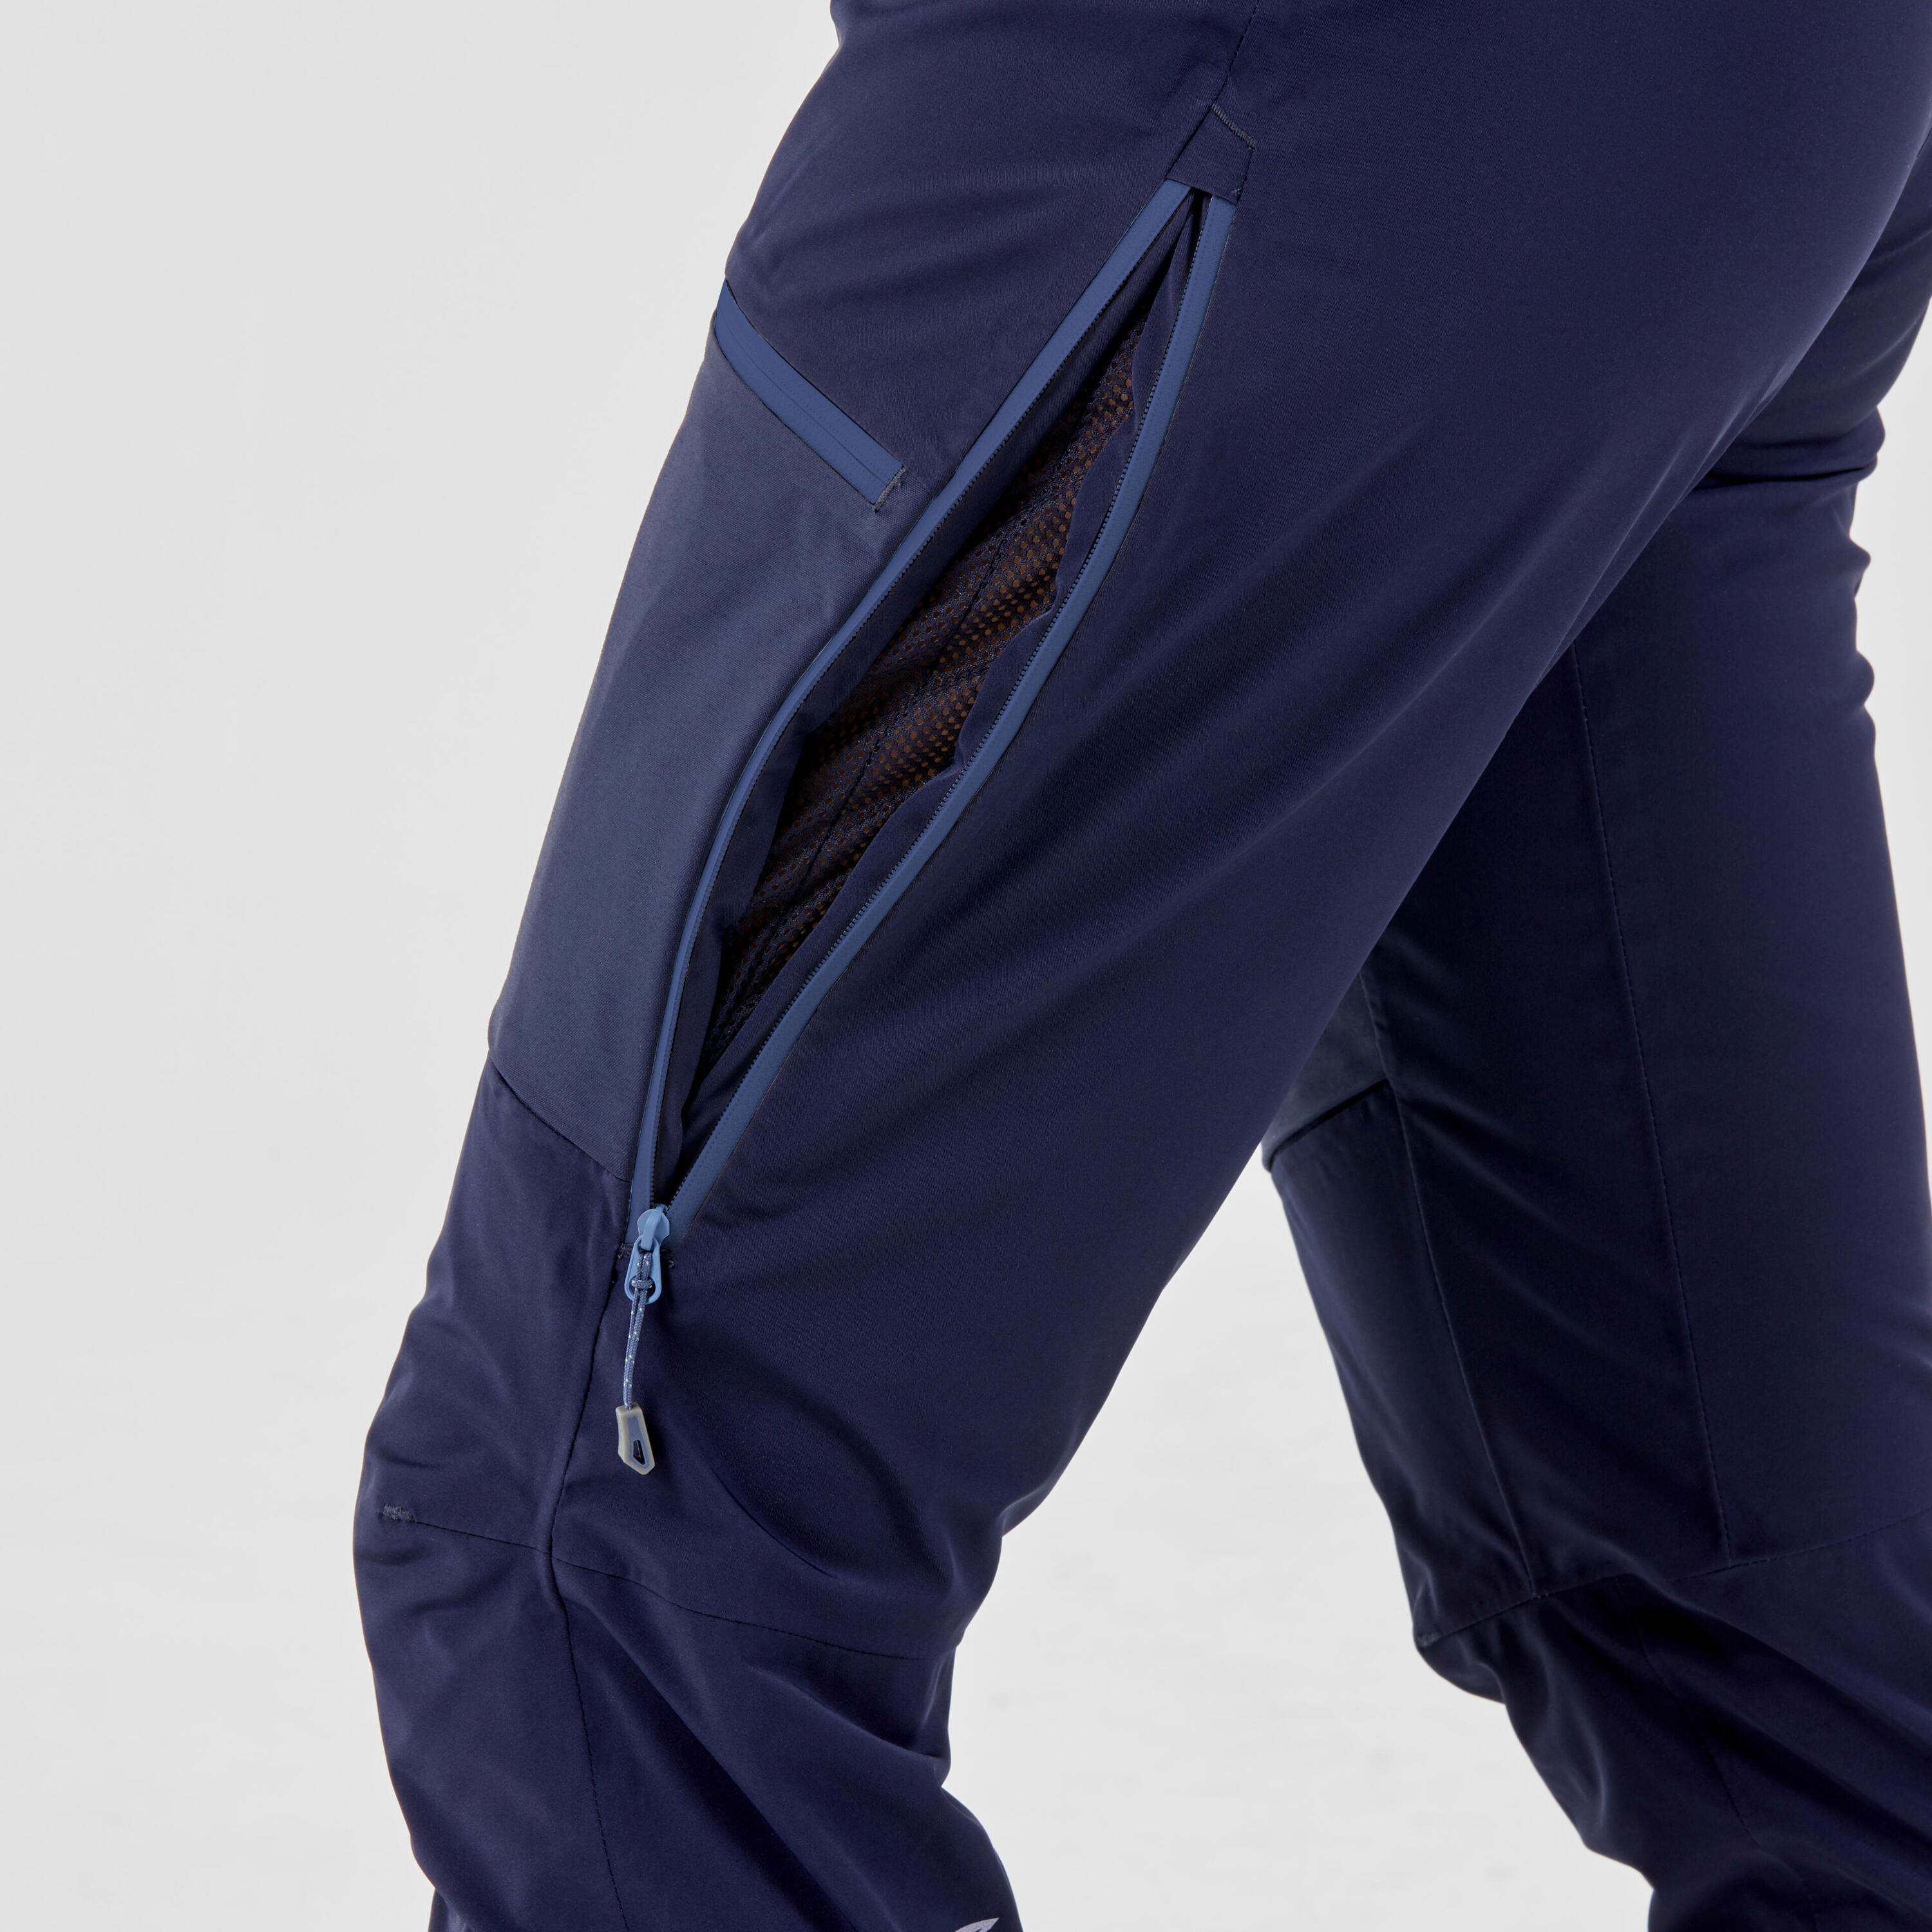 Women's mountaineering waterproof ICE trousers - Blue black 9/9